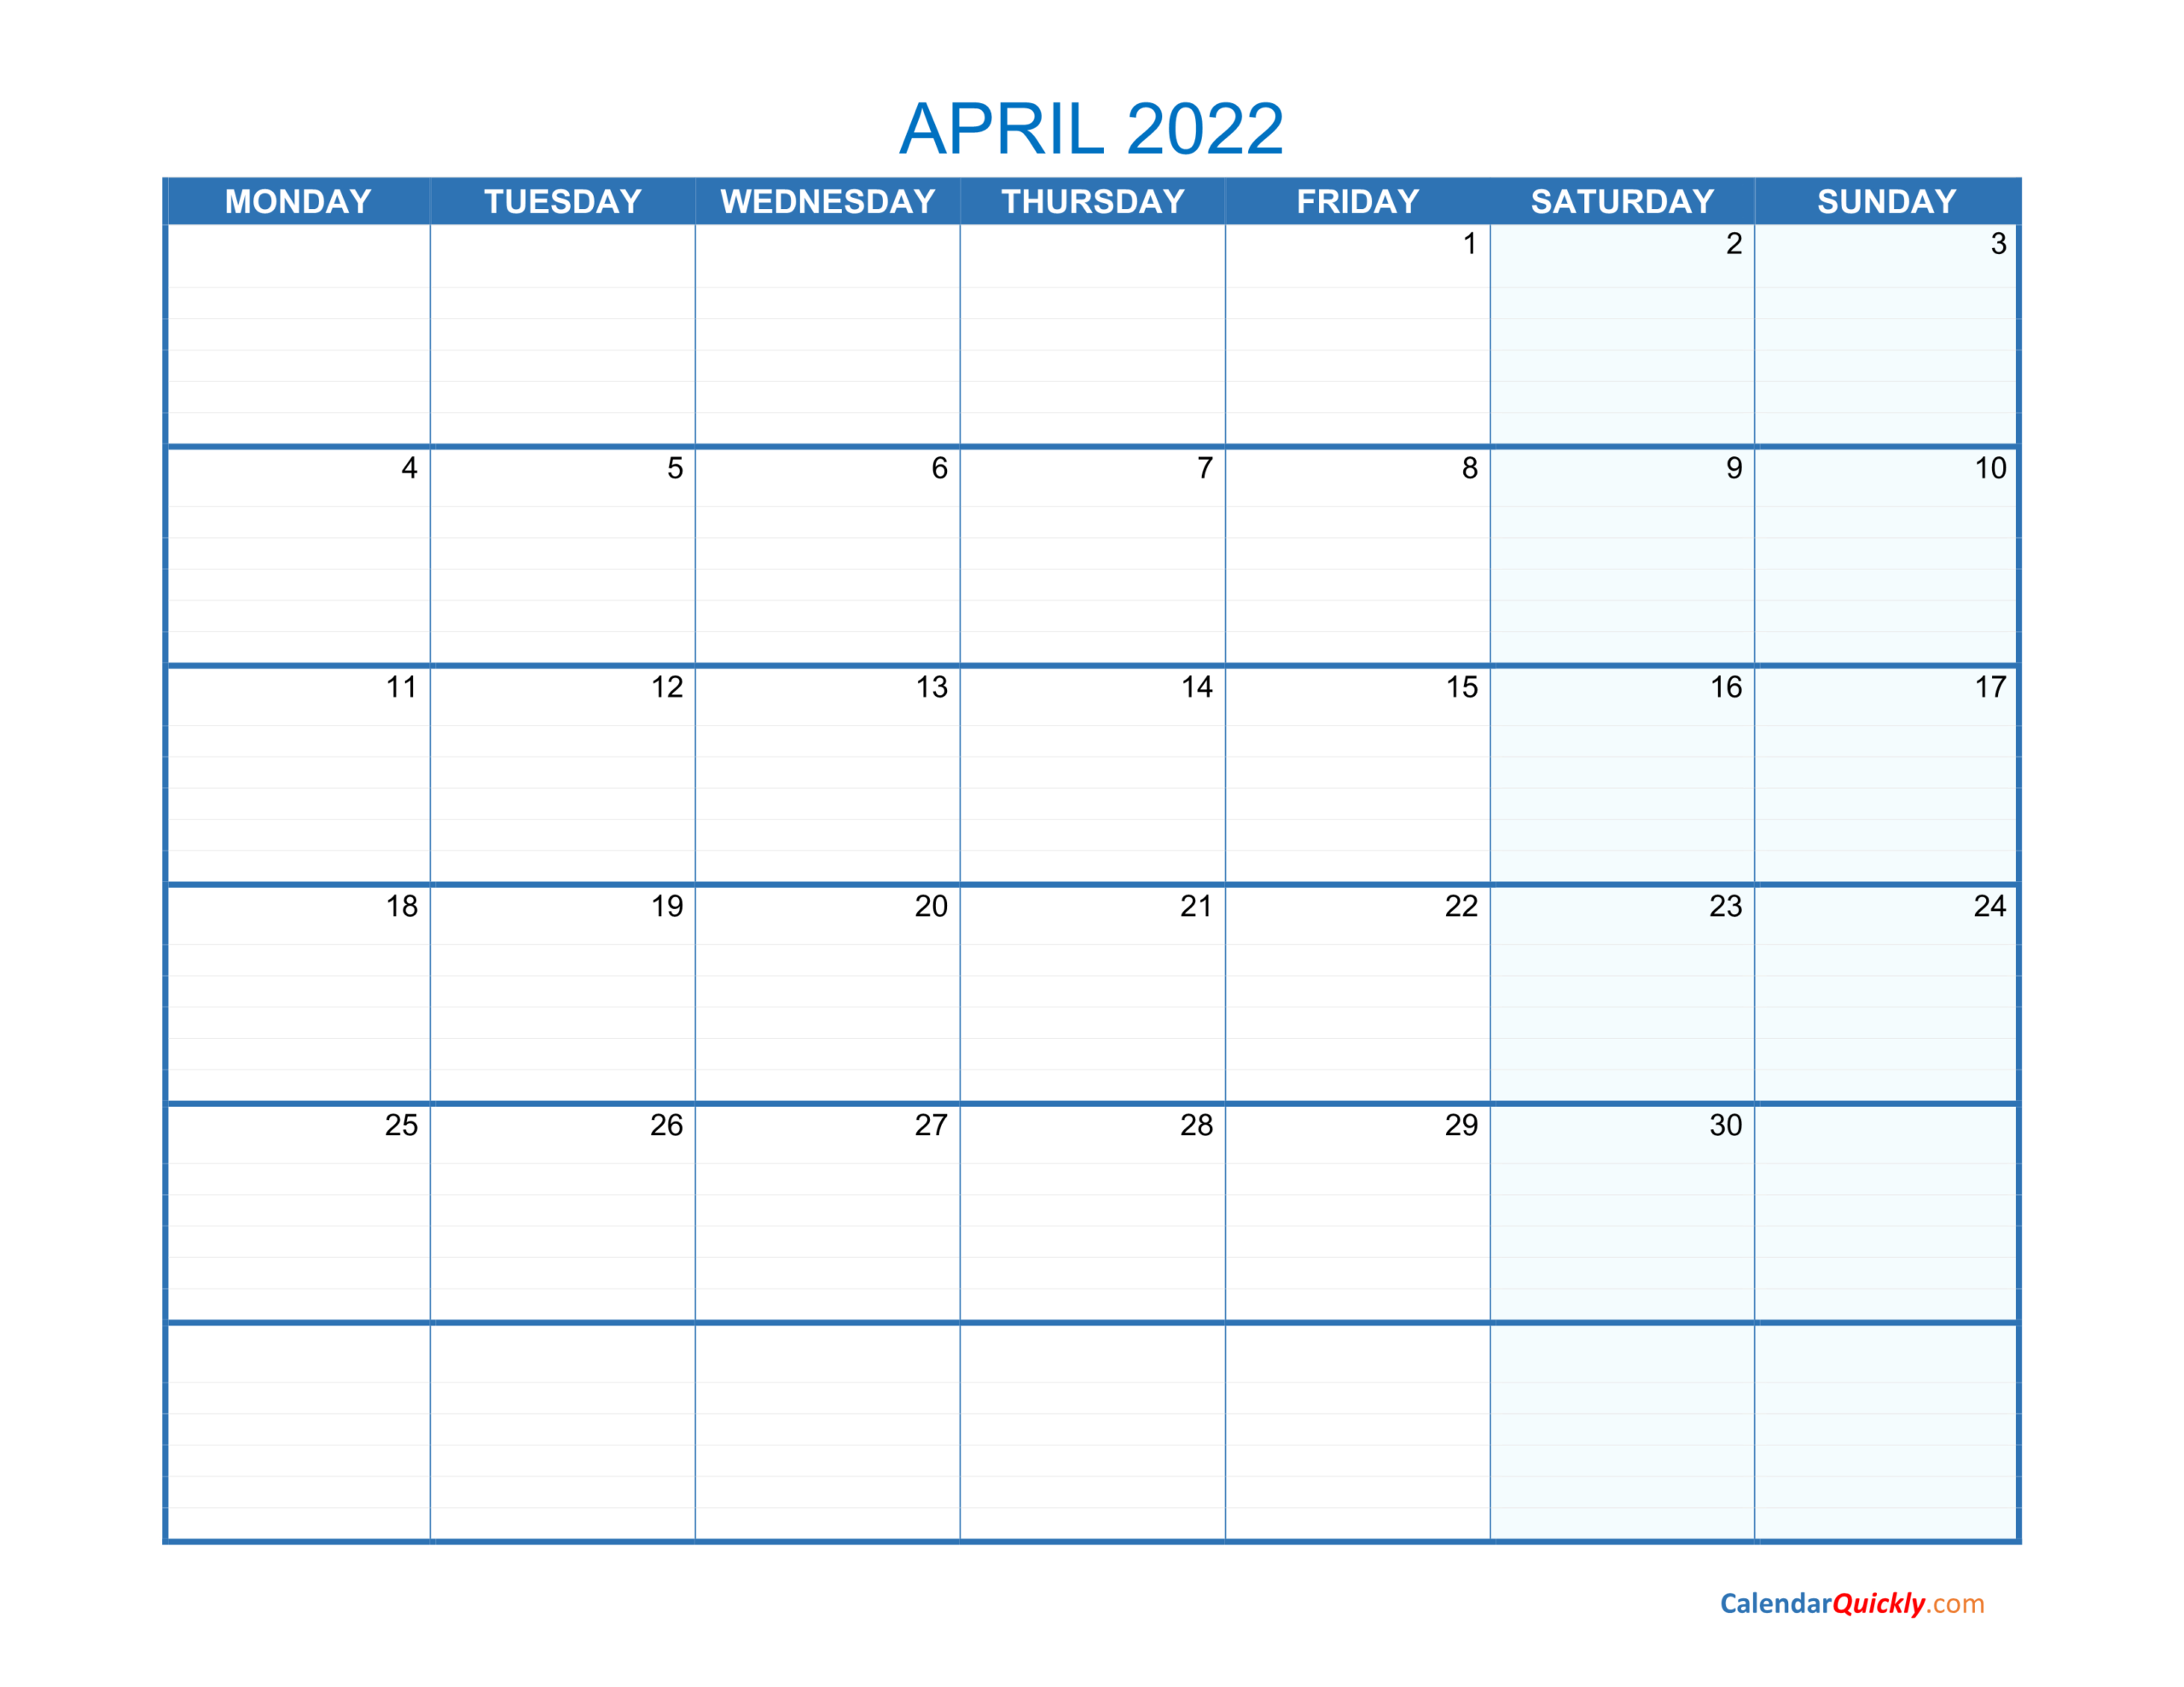 April Monday 2022 Blank Calendar | Calendar Quickly